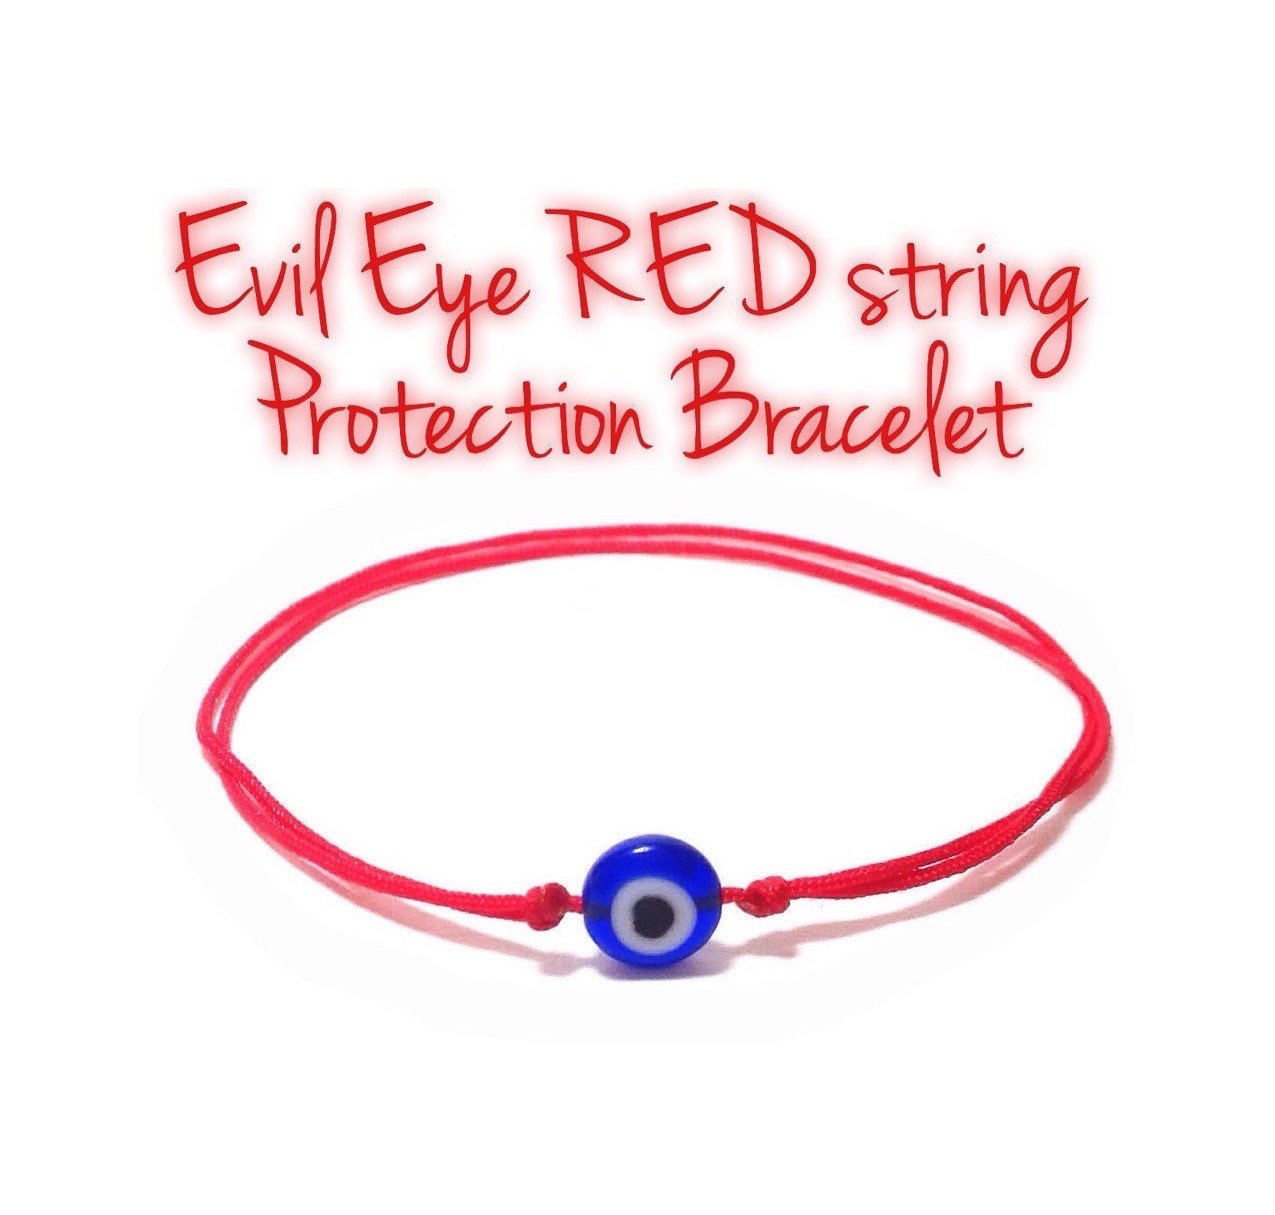 Evil Eye Red String Protection Bracelet Amulet Red String Red